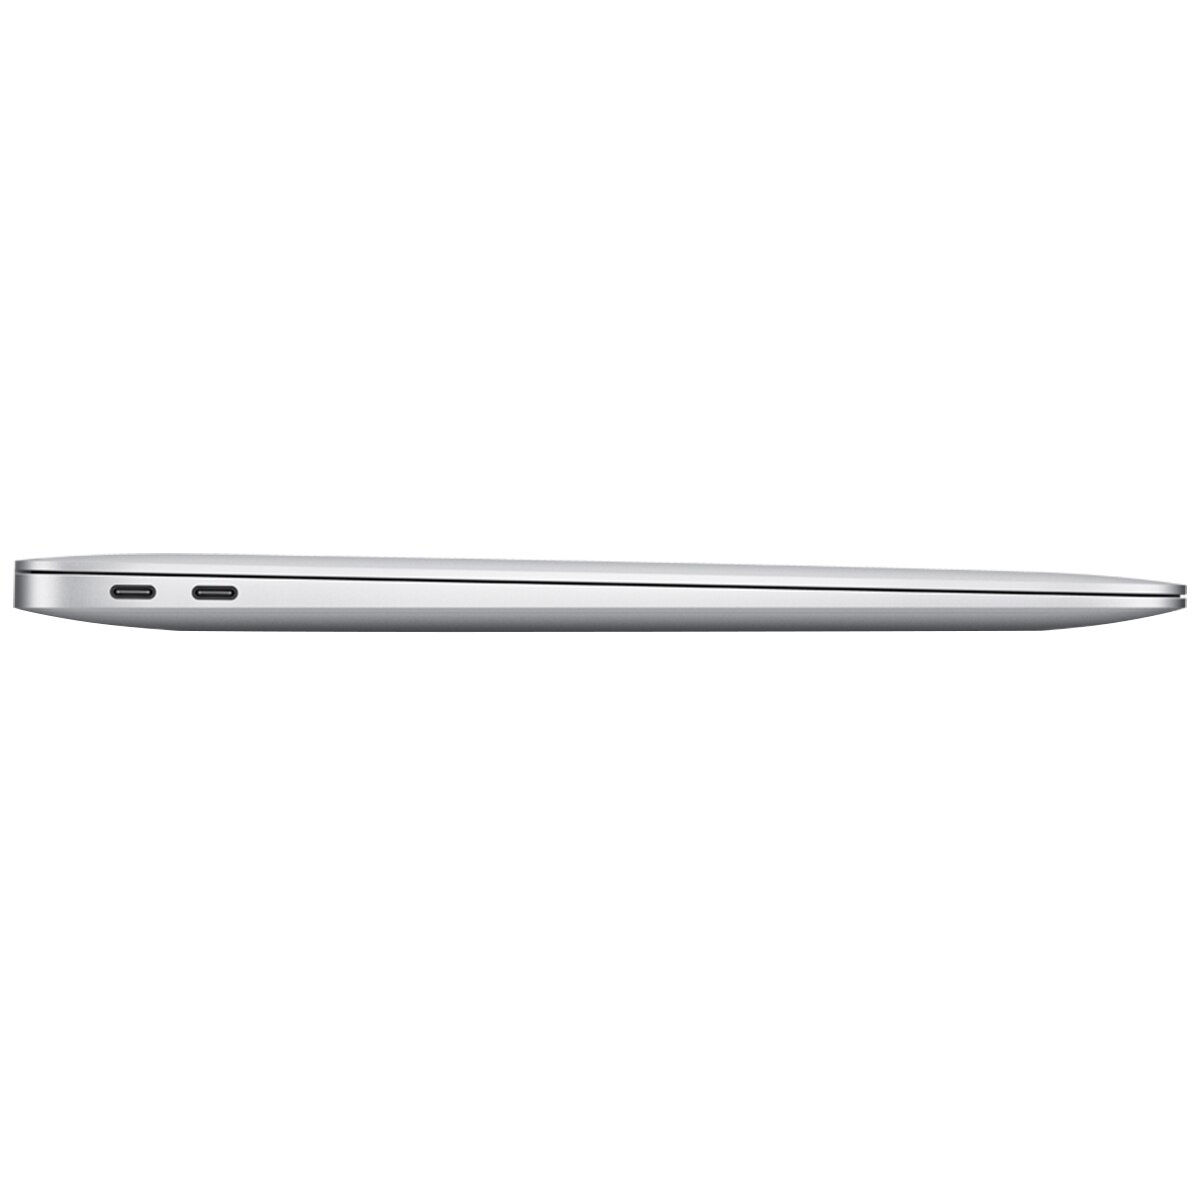 Macbook Air MVFJ2X/A 13-inch MacBook Air: 1.6GHz dual-core 8th-generation Intel Core i5 processor, 256GB - Space Grey